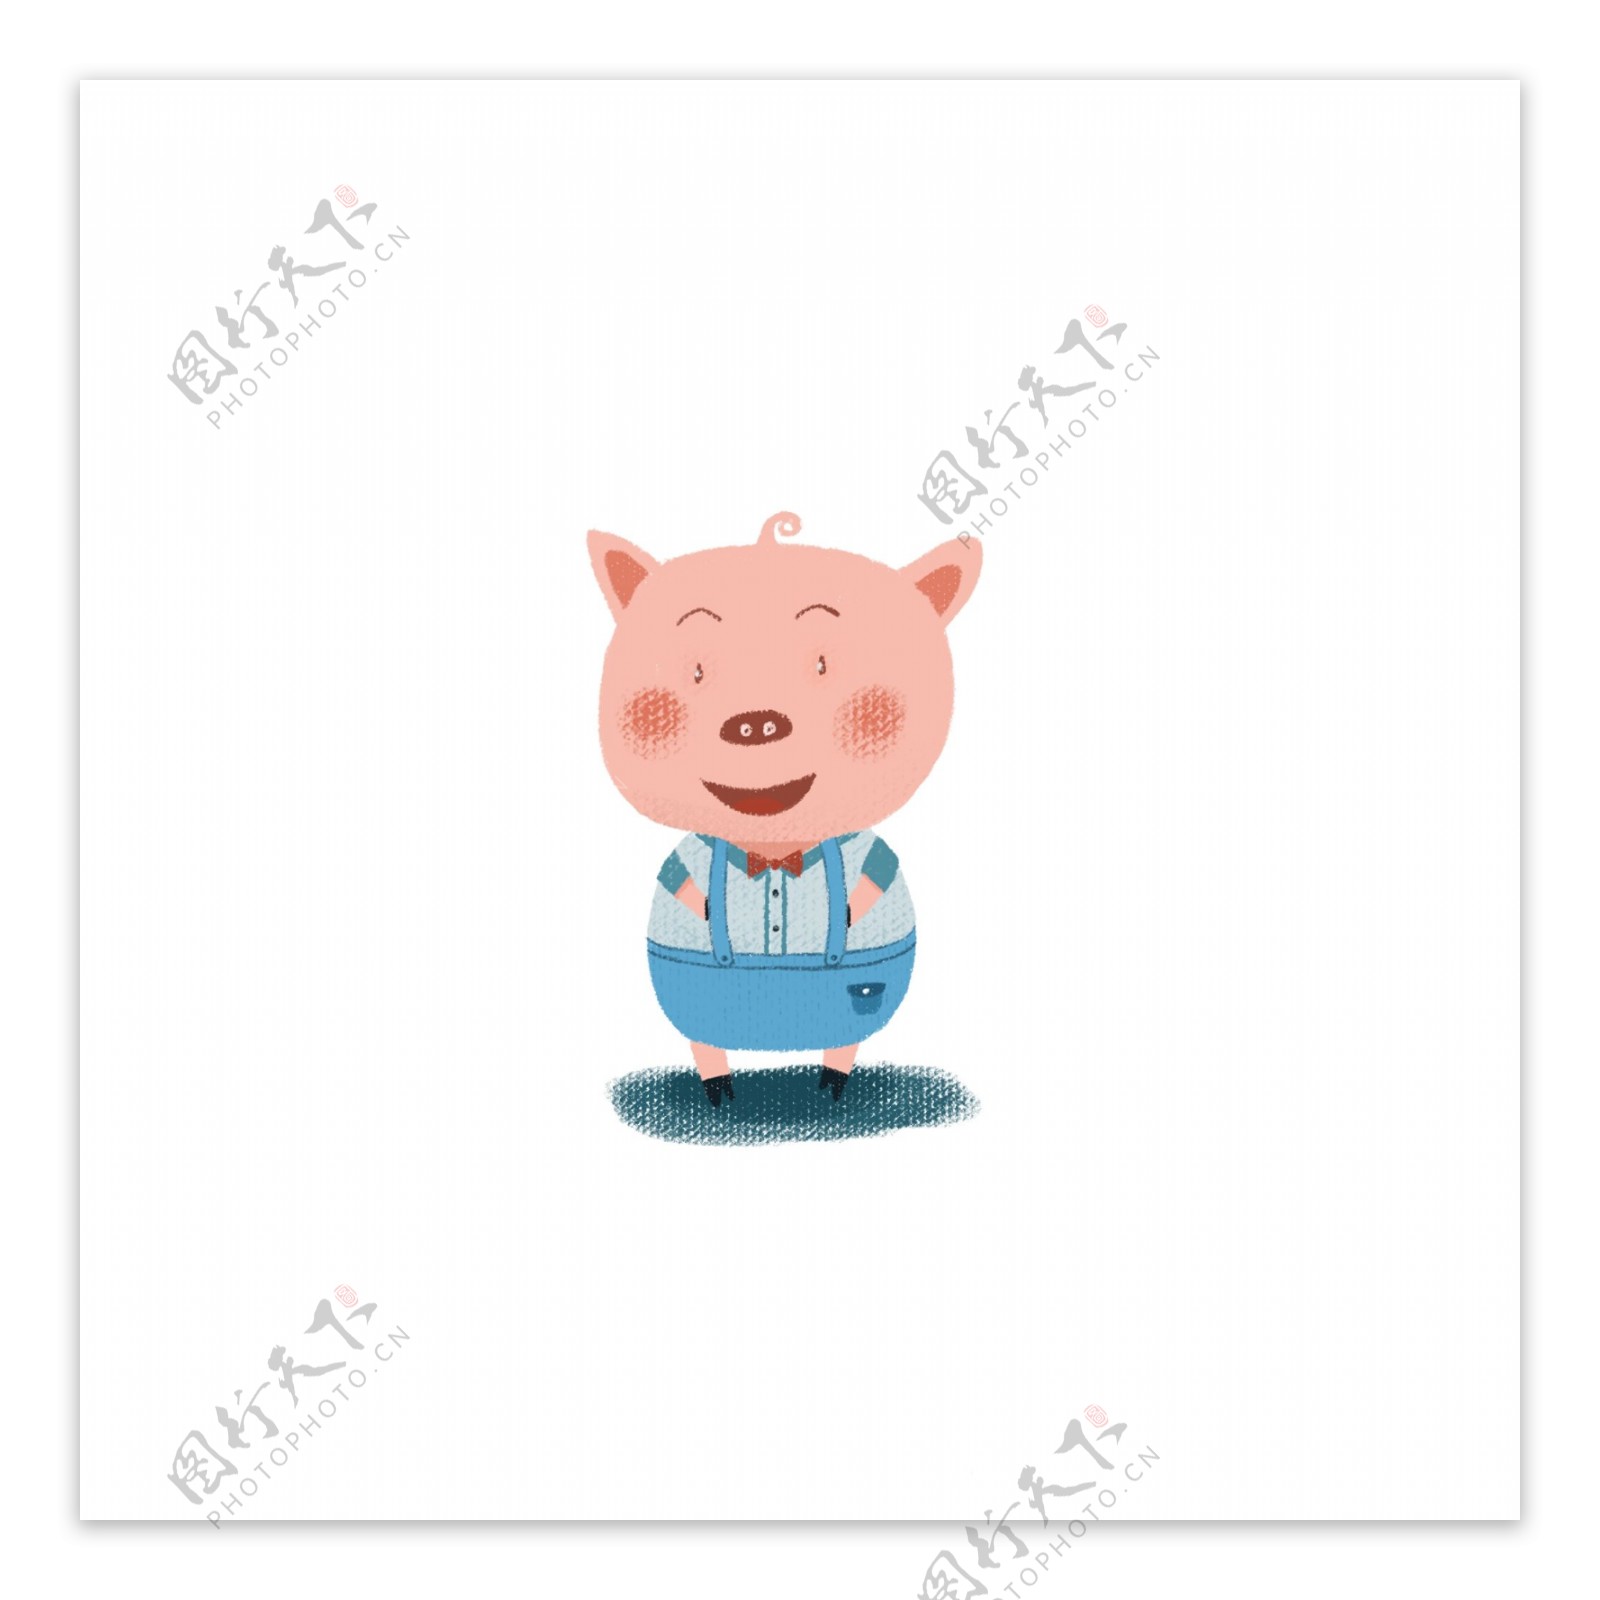 卡通可爱手绘人物小猪